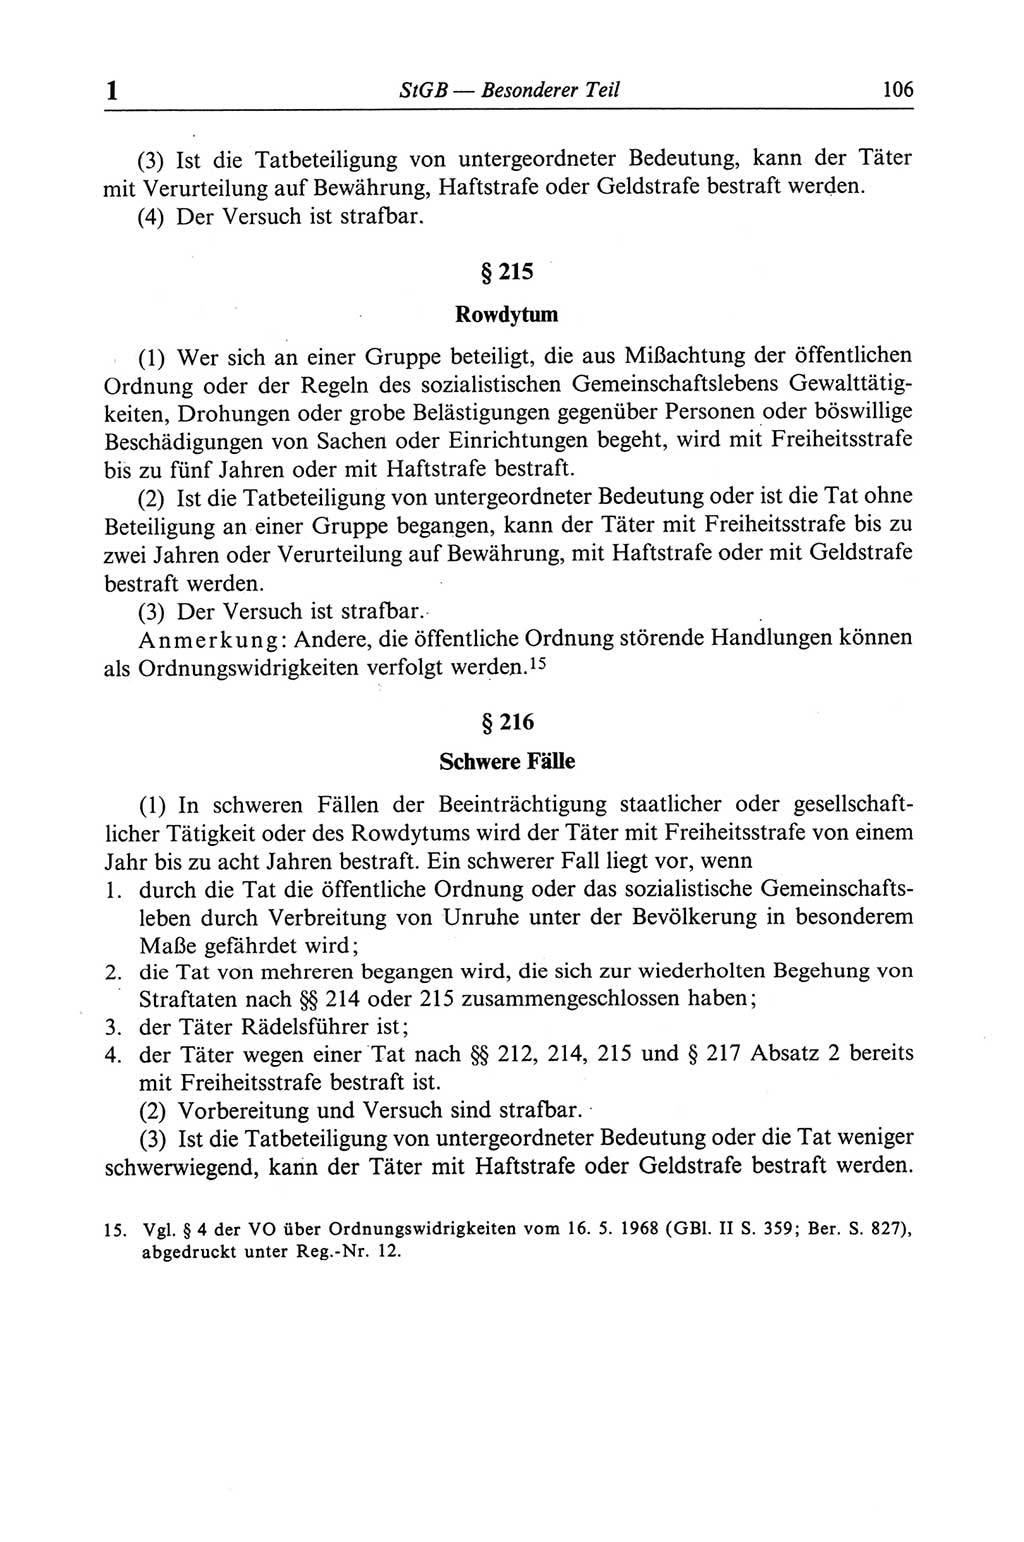 Strafgesetzbuch (StGB) der Deutschen Demokratischen Republik (DDR) und angrenzende Gesetze und Bestimmungen 1968, Seite 106 (StGB Ges. Best. DDR 1968, S. 106)